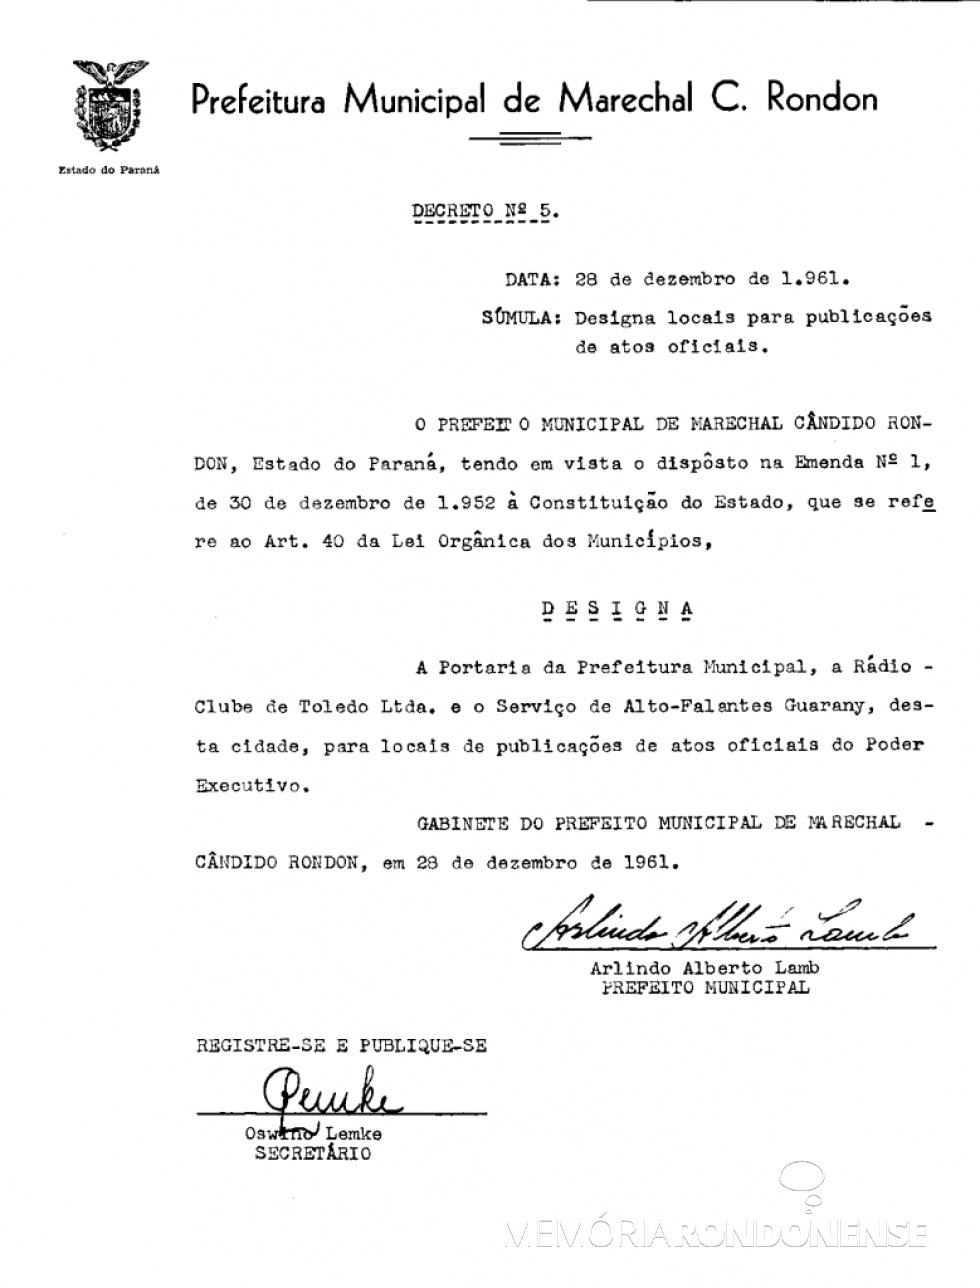 || Decreto nº 5/61, que especificava os locais de publicação dos atos oficiais do município de Marechal Cândido Rondon. 
Imagem: Arquivo PM-MCR - FOTO 6 - 